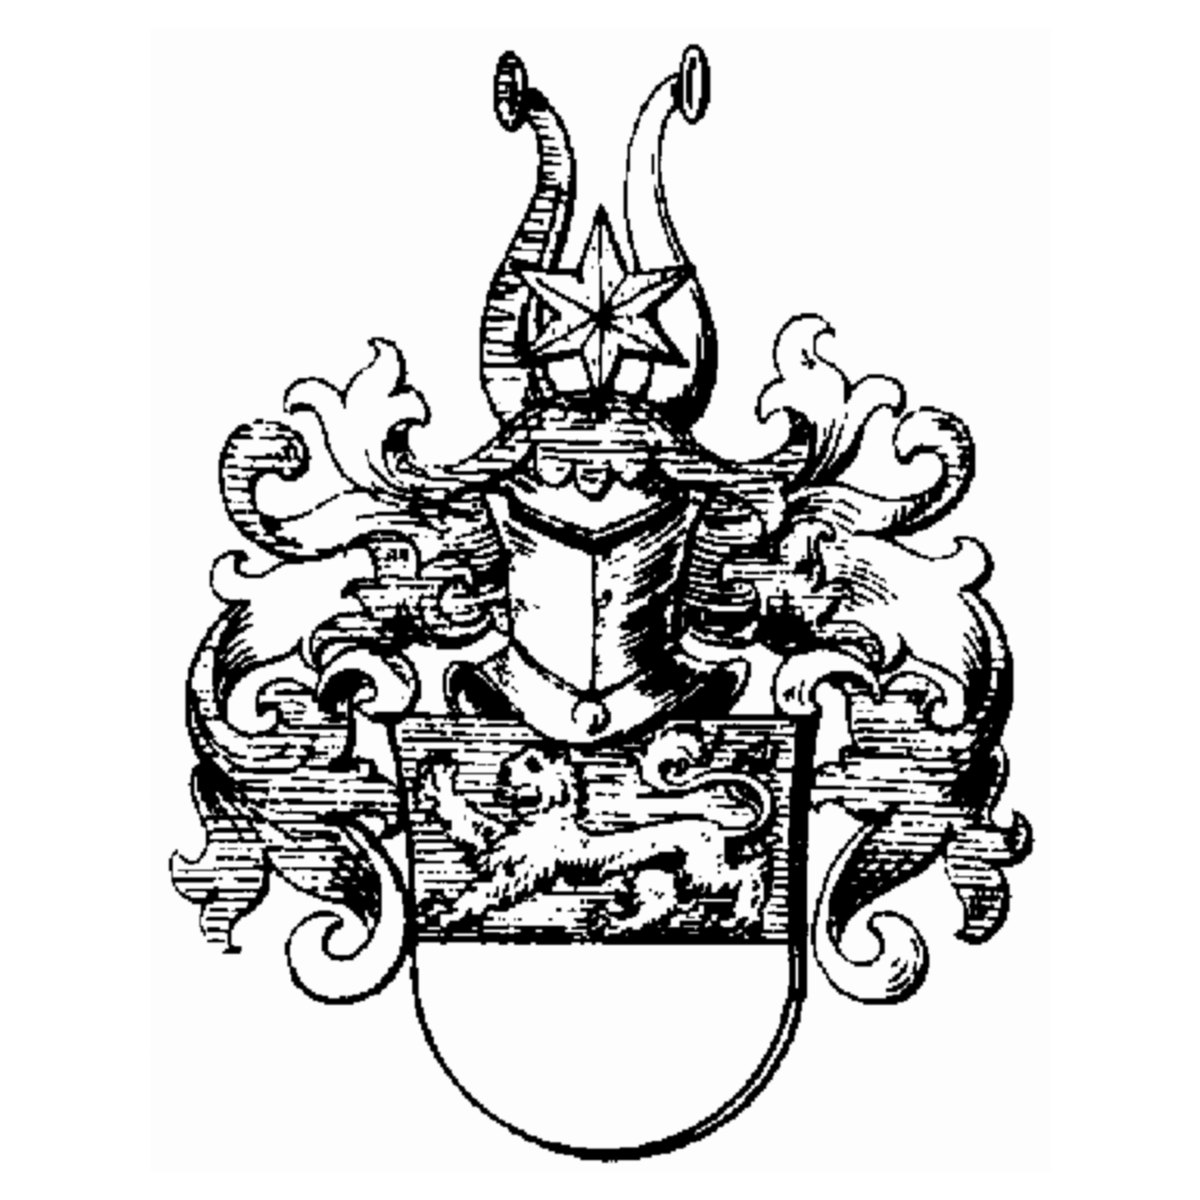 Coat of arms of family Zurhellen